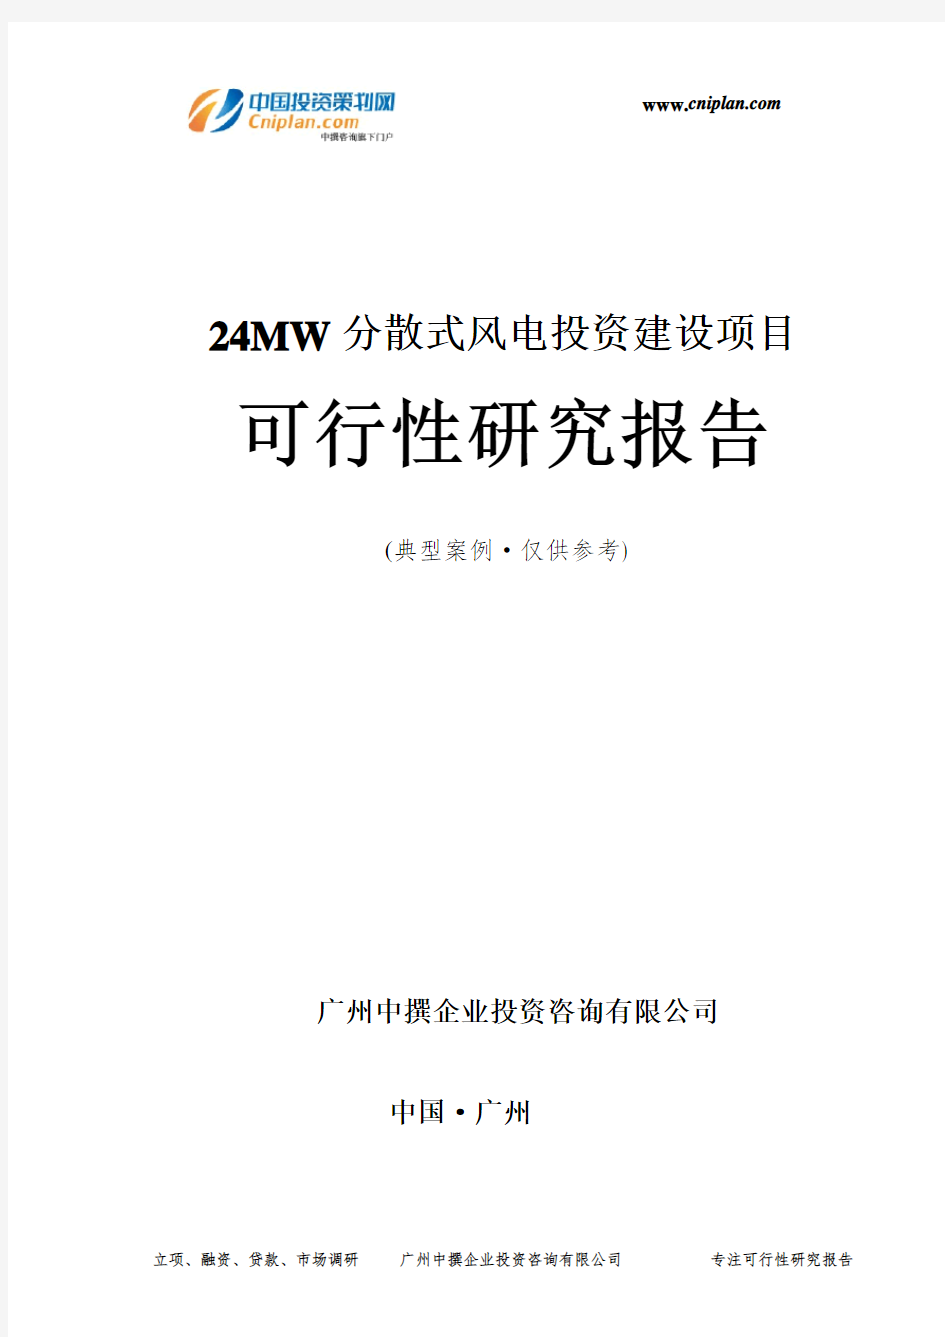 24MW分散式风电投资建设项目可行性研究报告-广州中撰咨询